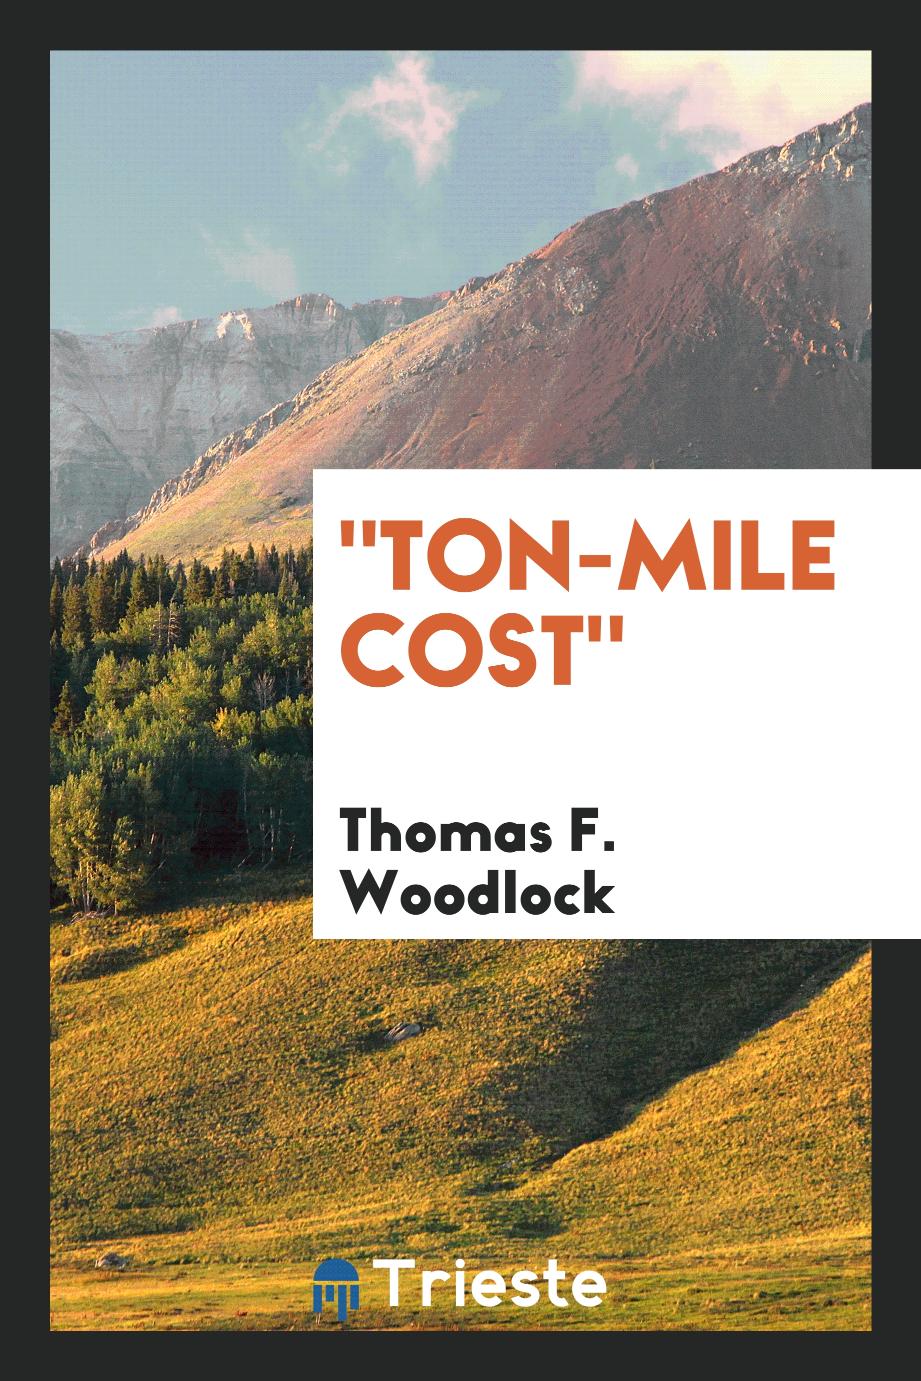 "Ton-mile Cost"